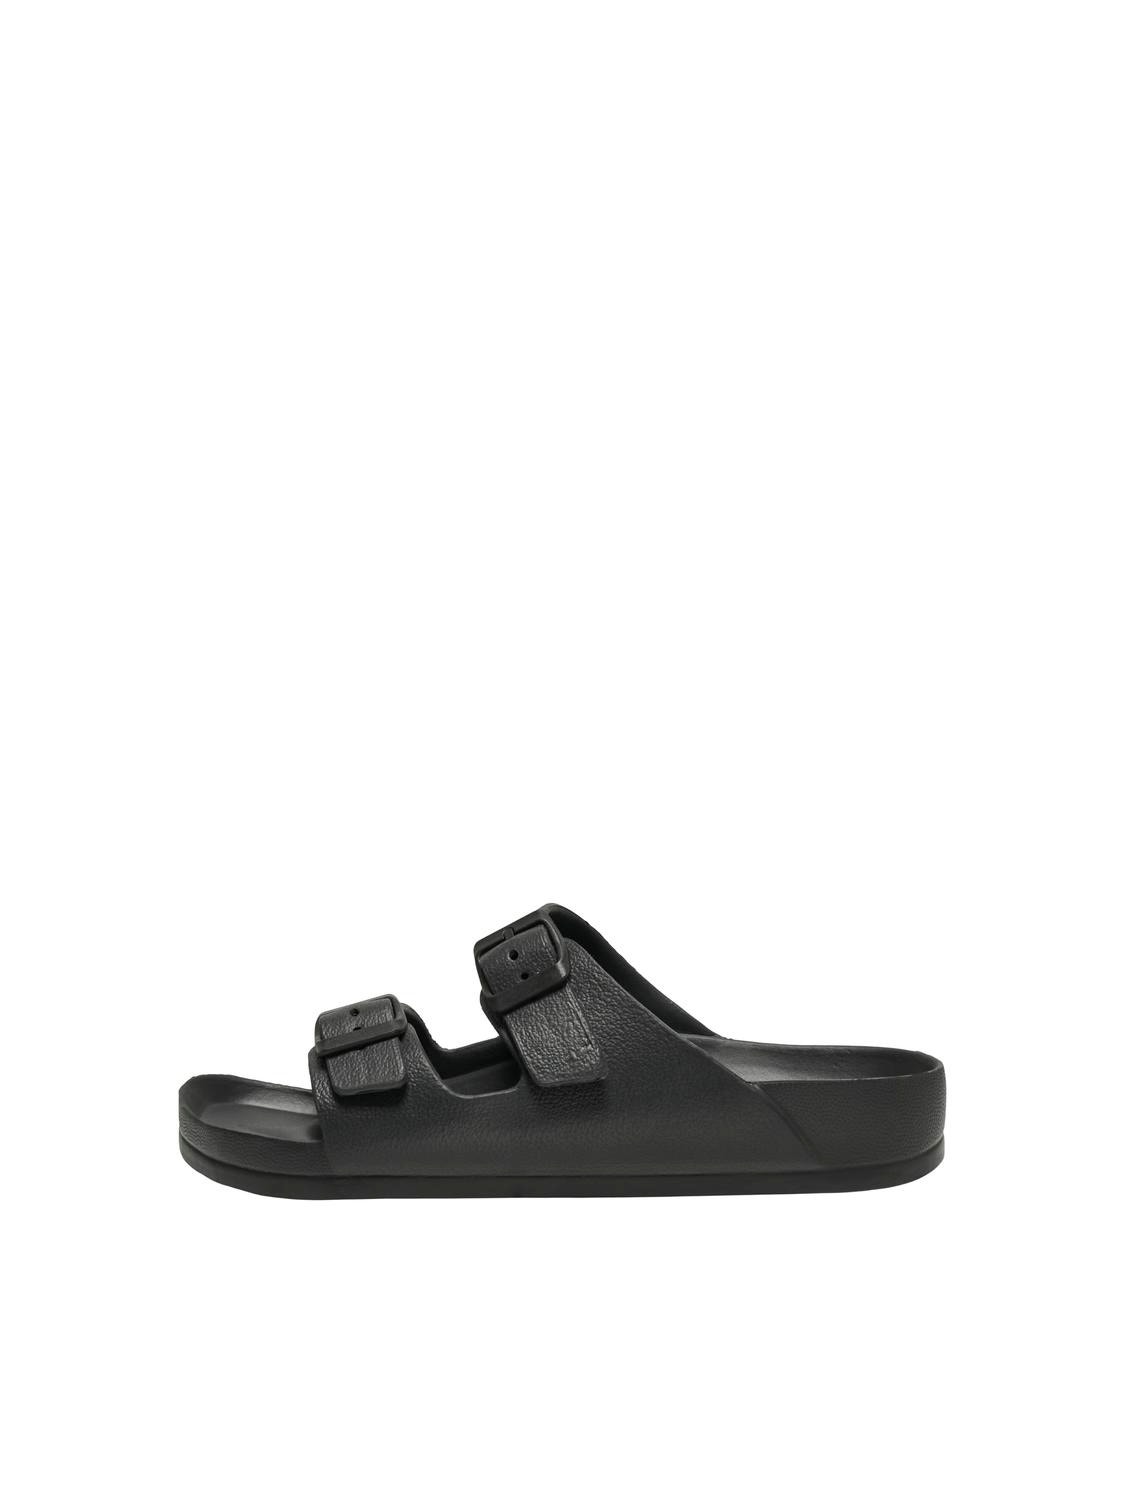 ONLY Adjustable strap Sandal -Black - 15316868